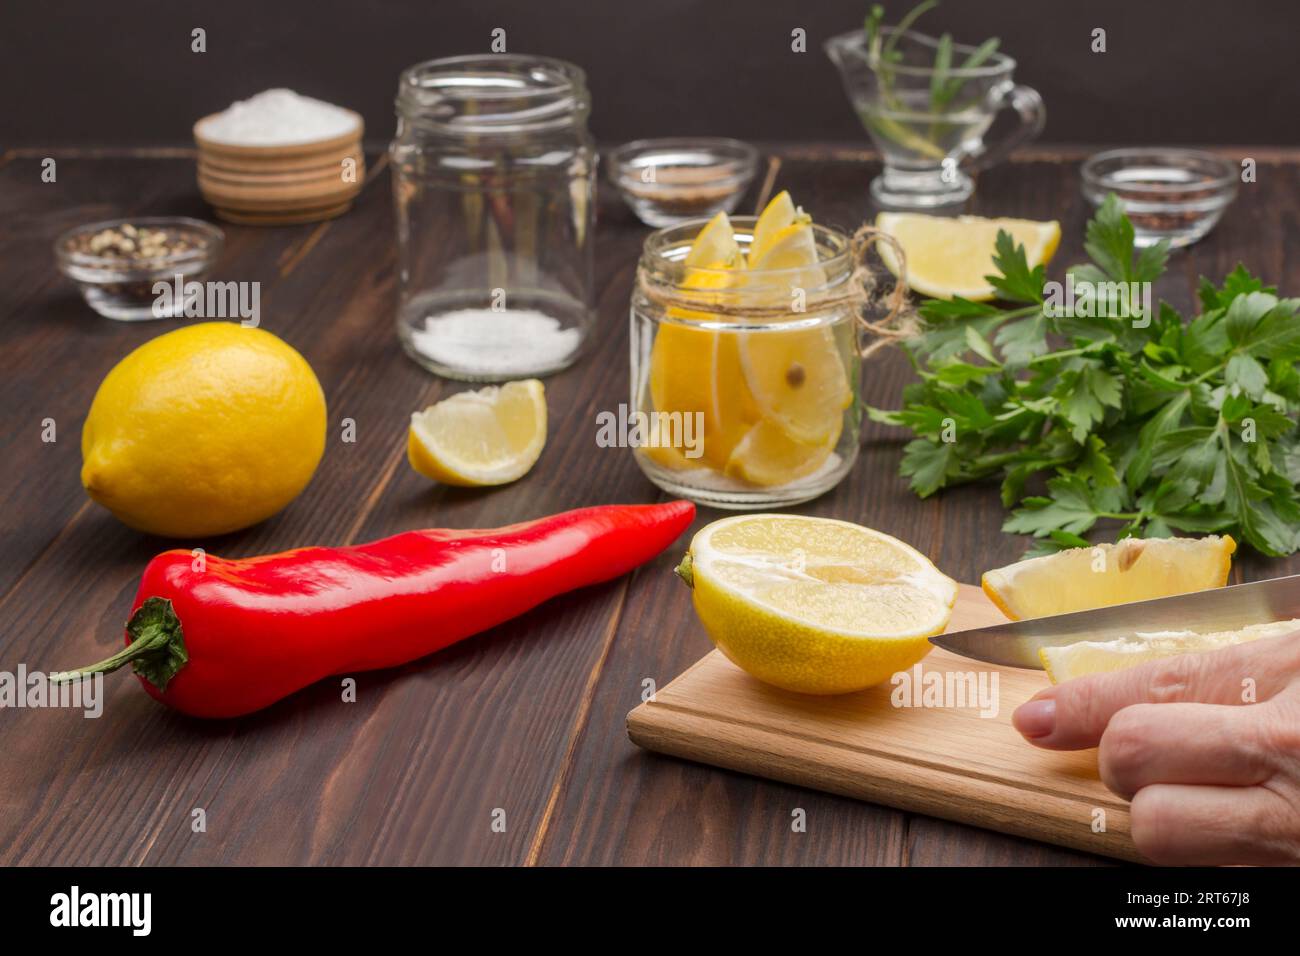 Hacken Sie mit den Händen eine Zitrone auf dem Schneidebrett. Zitrone im Glas. Chilischote, ganze Zitrone und Salz. Fermentierte Lebensmittel zur Stärkung der Immunität. Dunkler Holzhintergrund Stockfoto